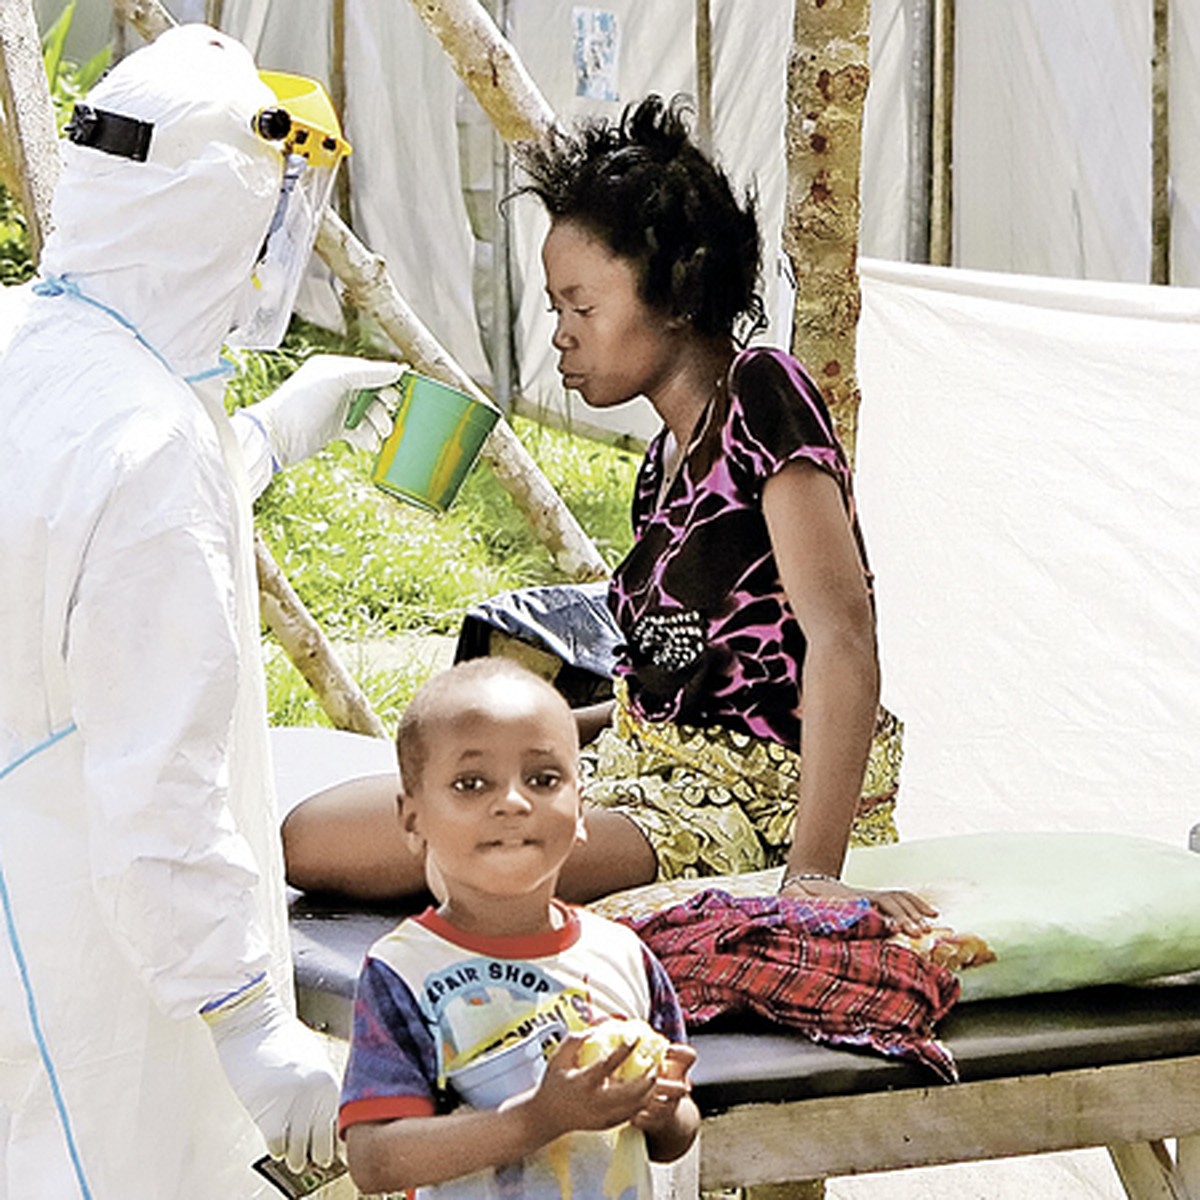 В Гвинее зафиксирована новая вспышка Эболы